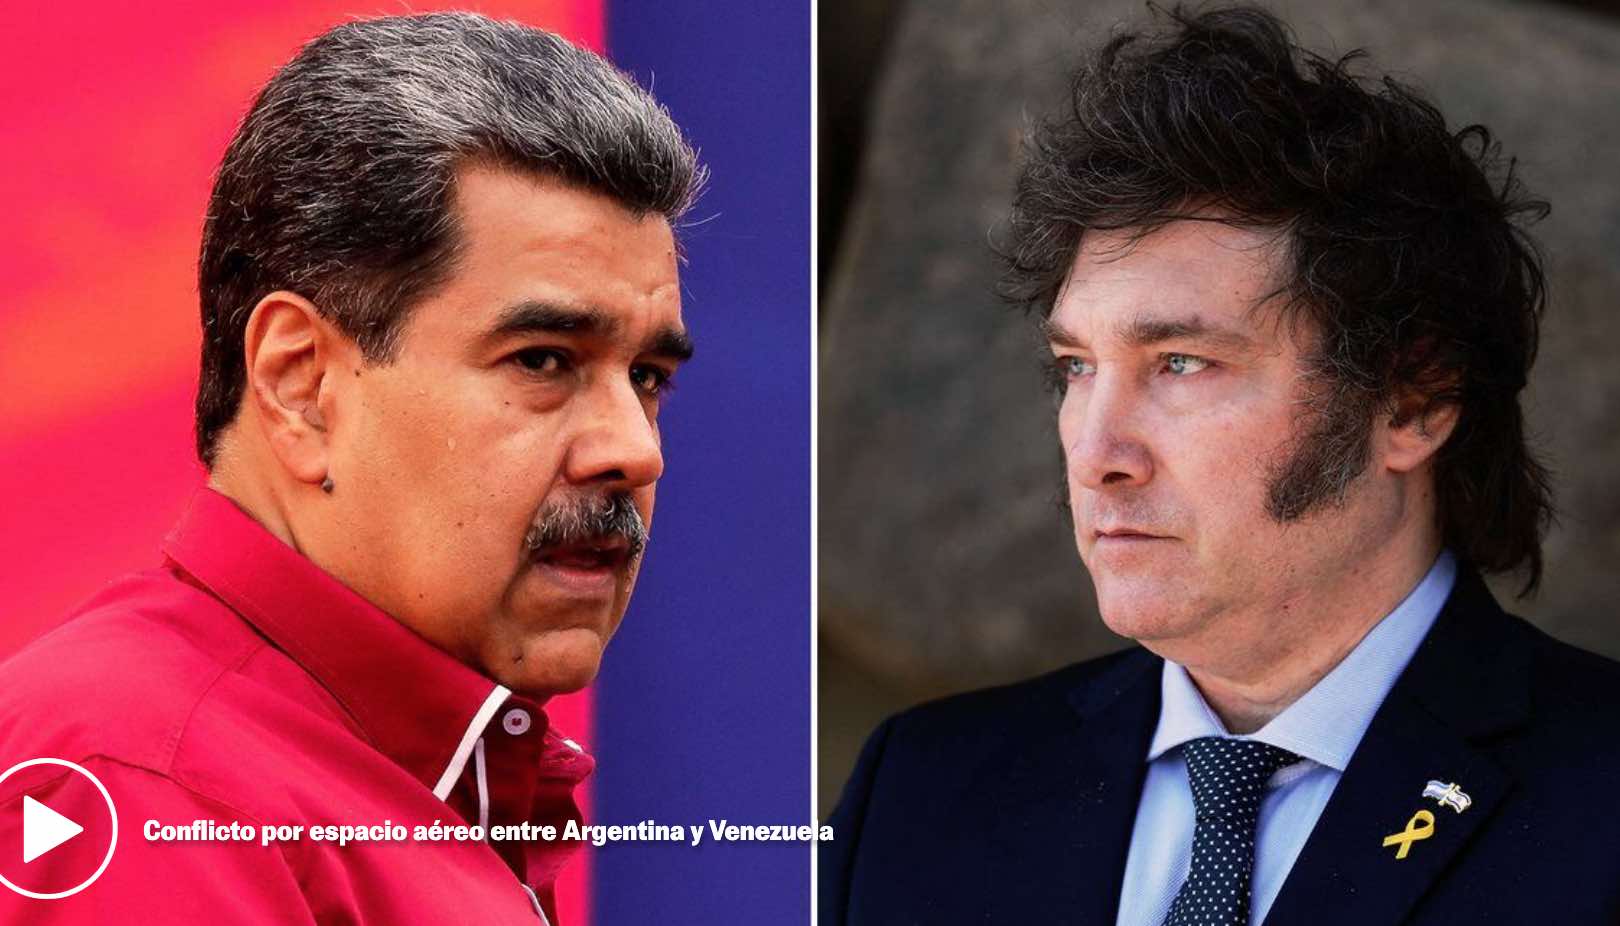 Cierre del espacio a?reo entre Venezuela y Argentina